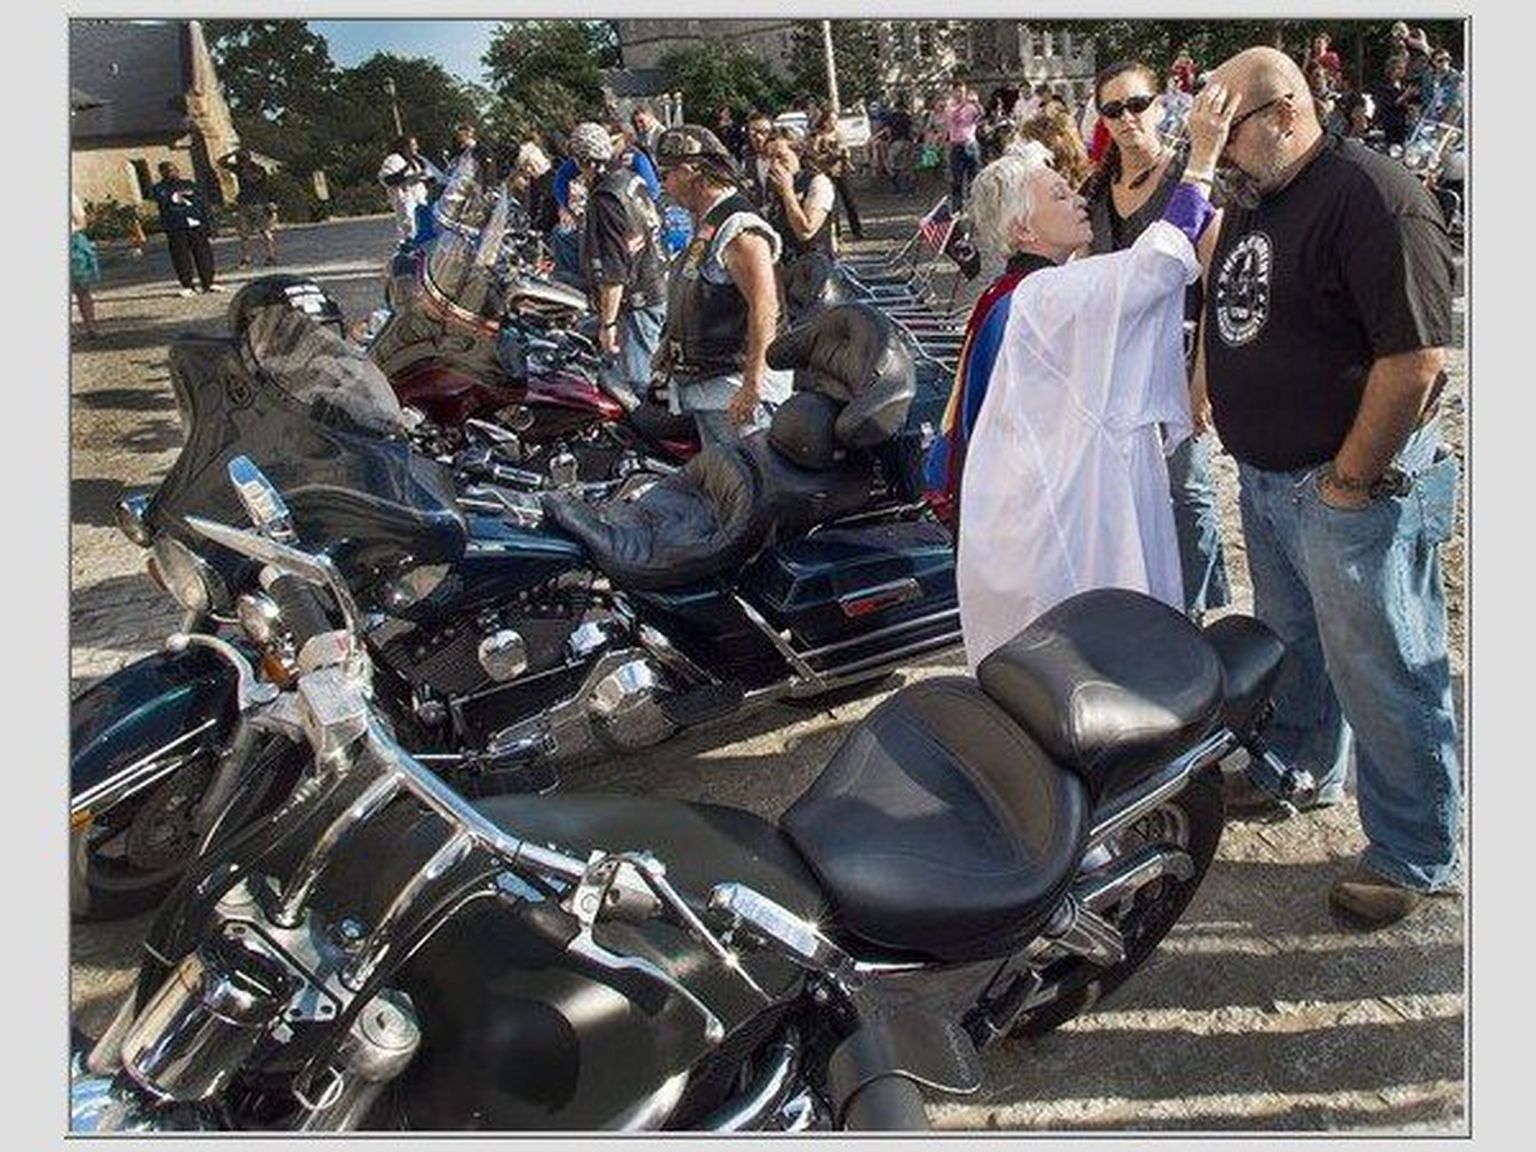 Metodisti jutlustaja Gina Gilland Campbell Washingtonis sõidule suunduvat Harley-jõmmi õnnistamas.